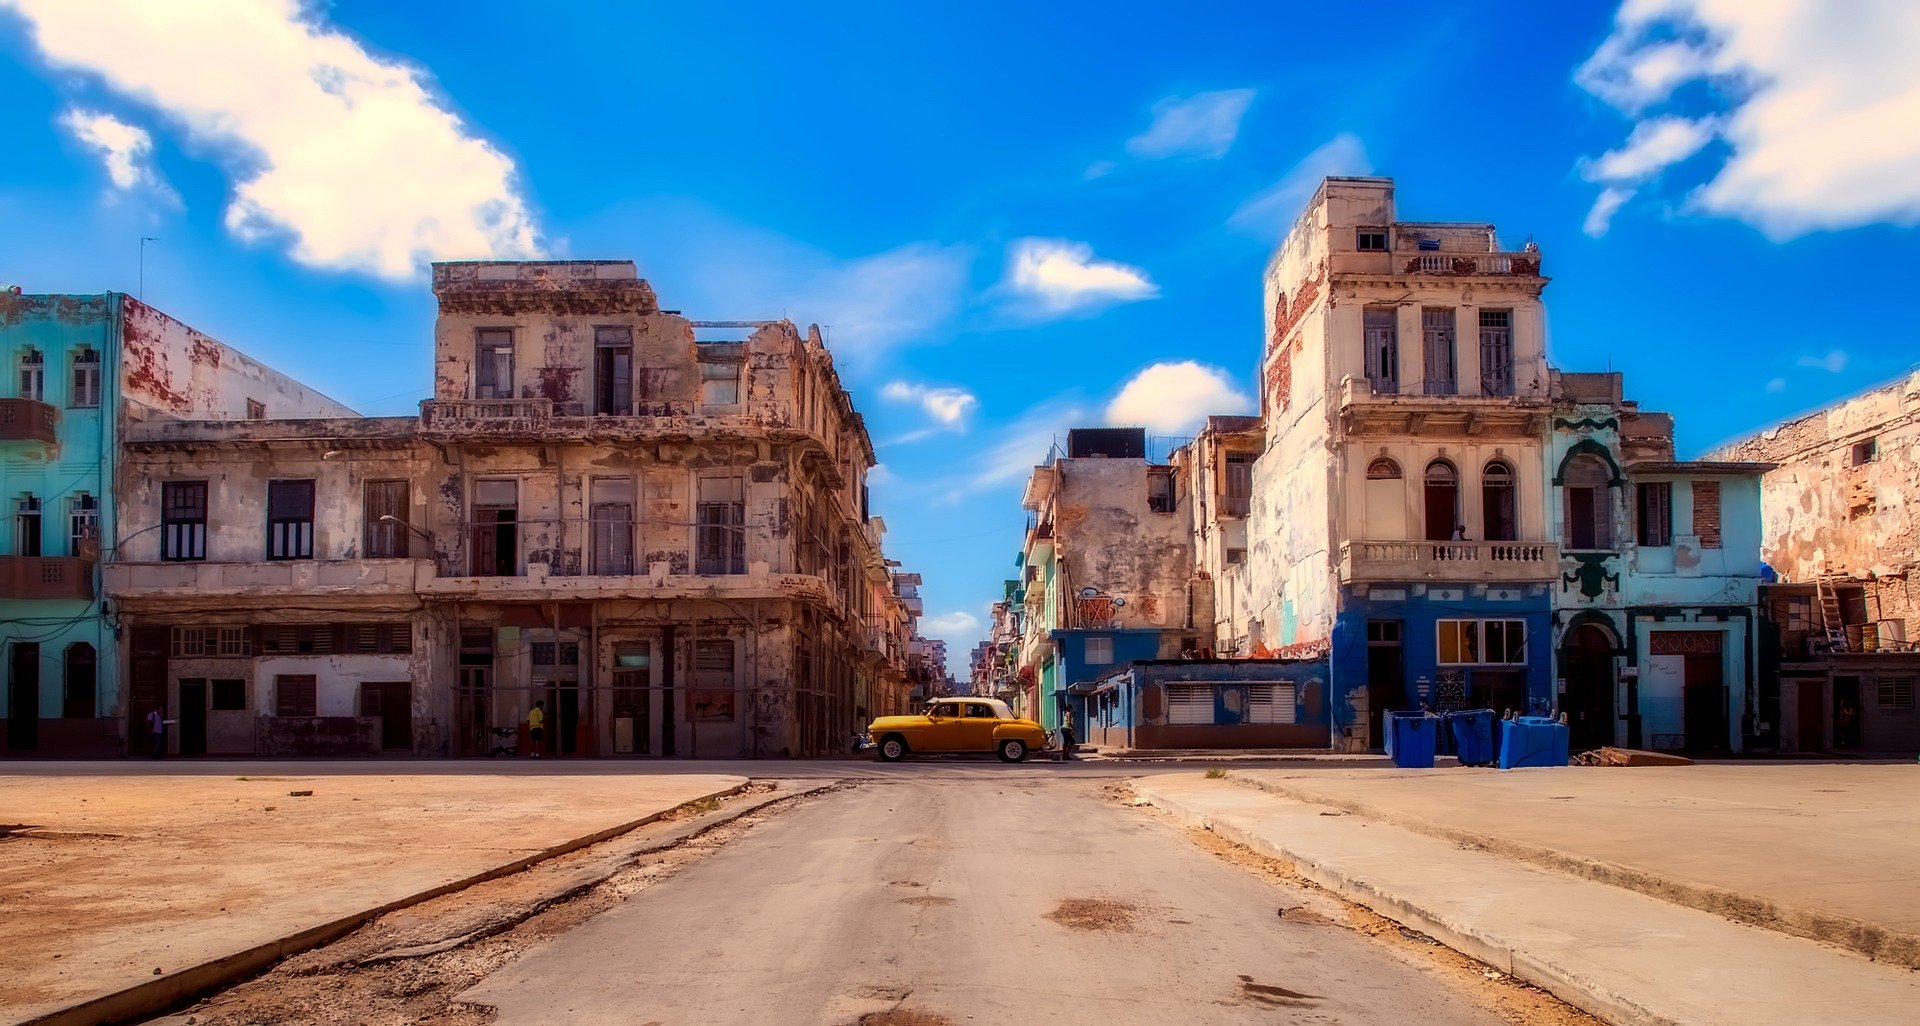 stolica Kuby - Havana